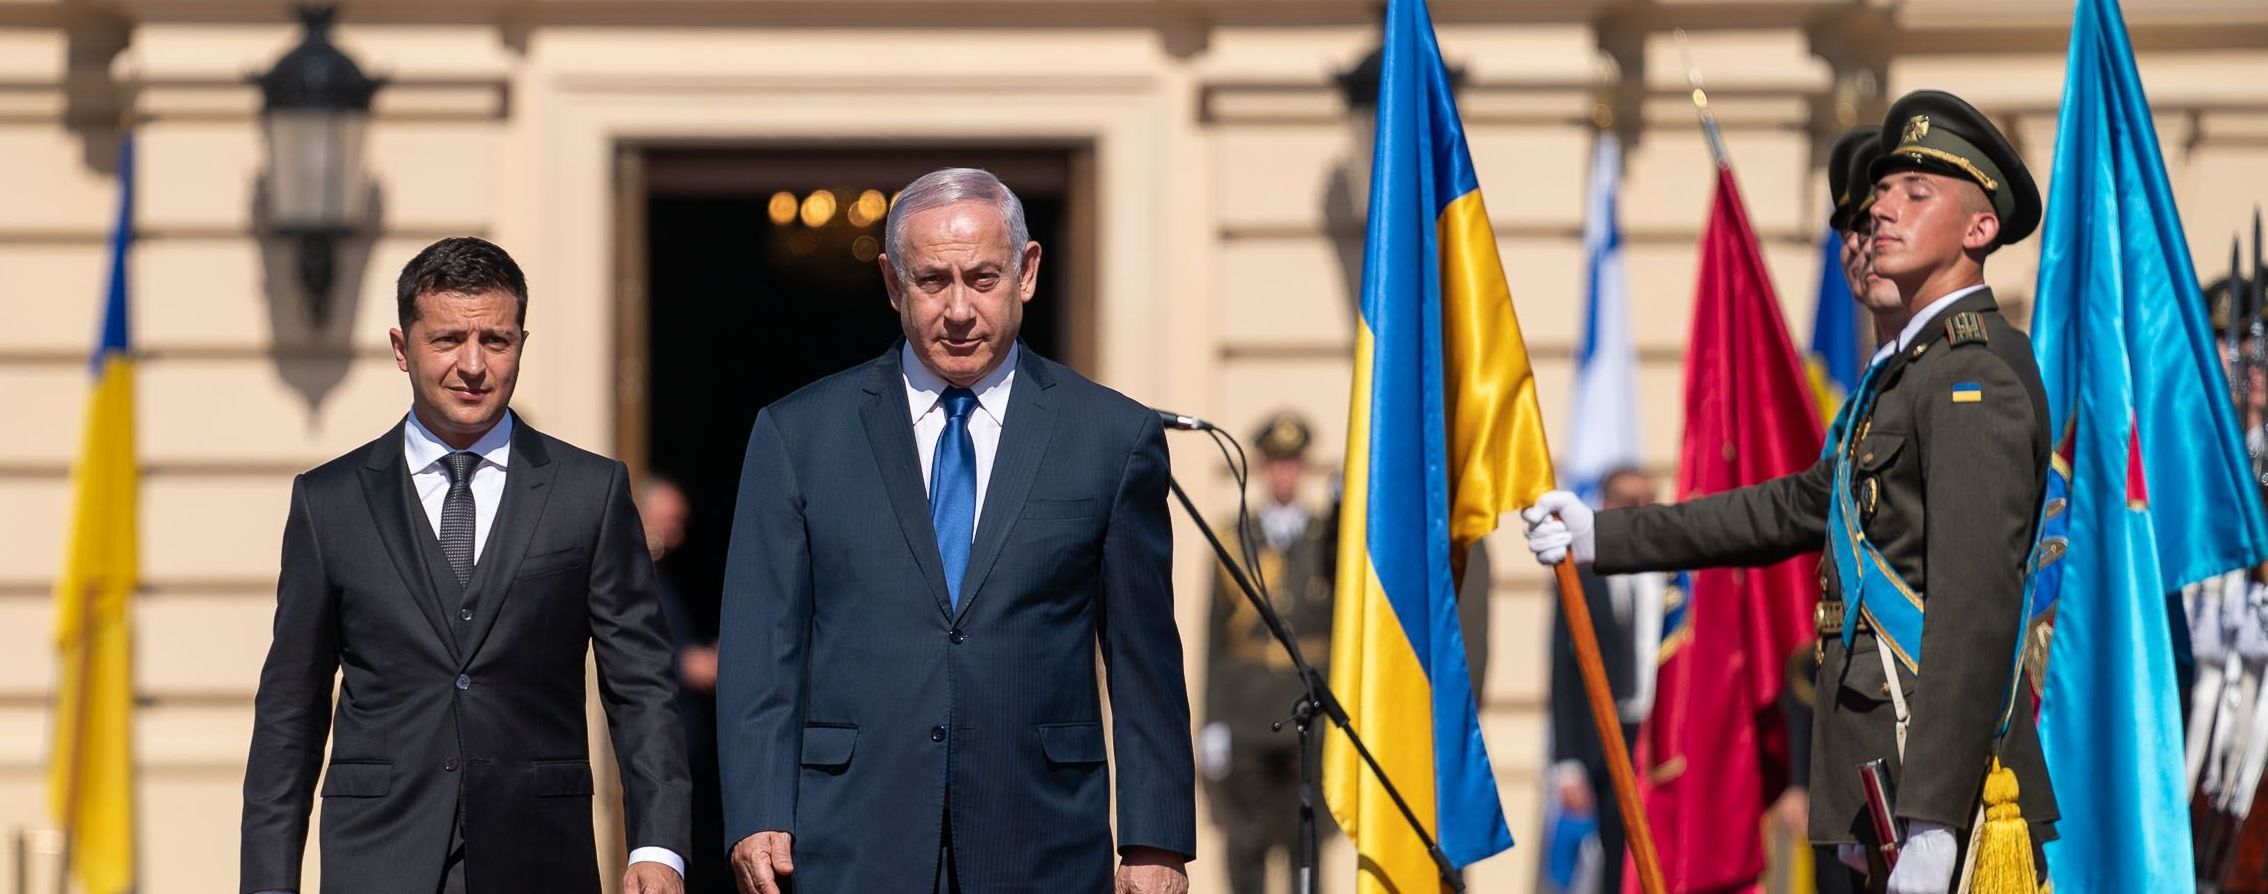 Зеленский и Нетаньяху начали историческую встречу